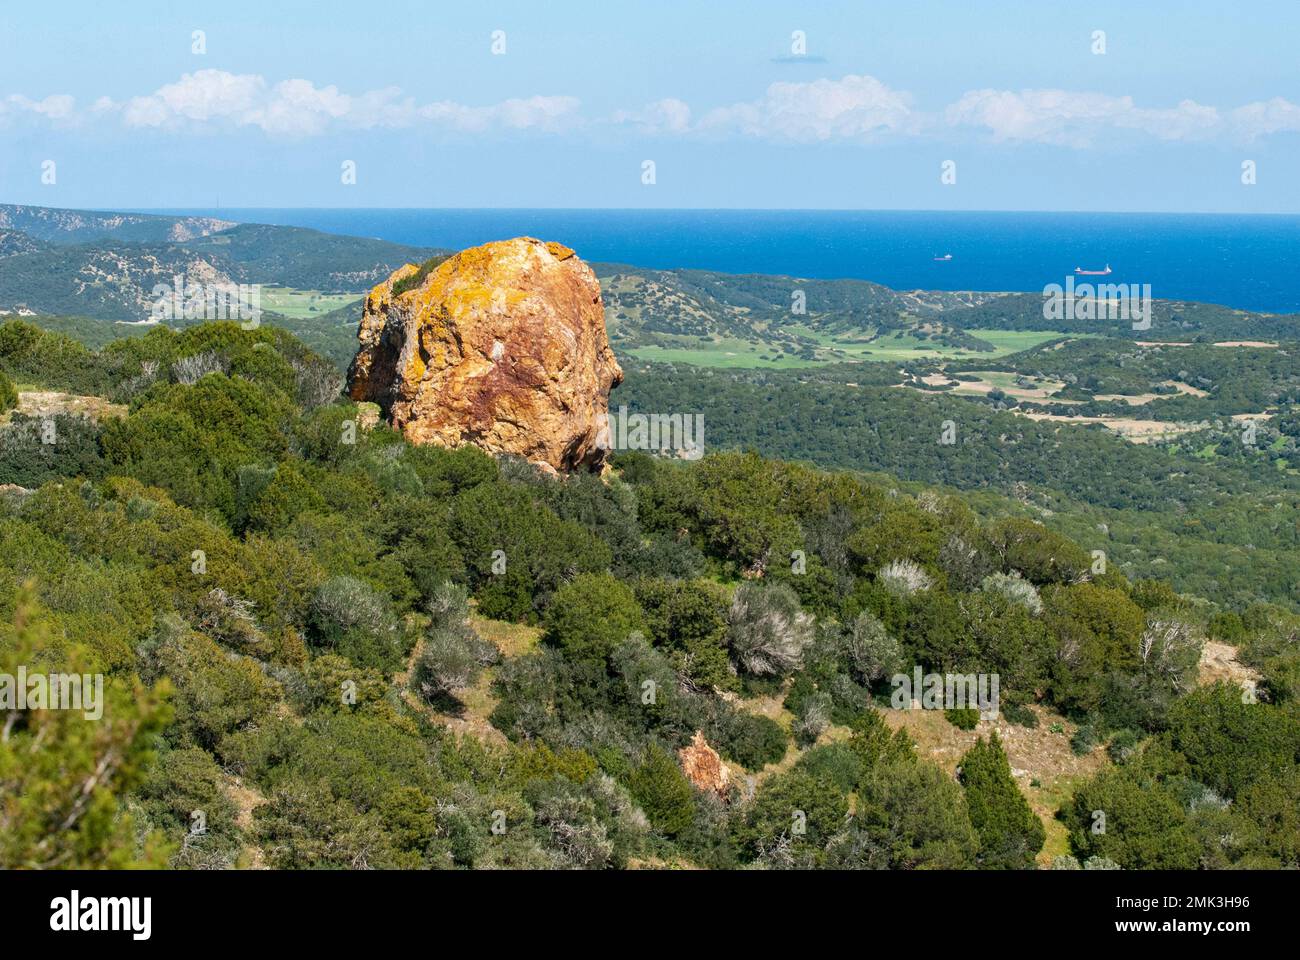 La roccia rossa/gialla si trova ai piedi delle montagne Pentadaktilos sulla penisola di Karpasia Foto Stock